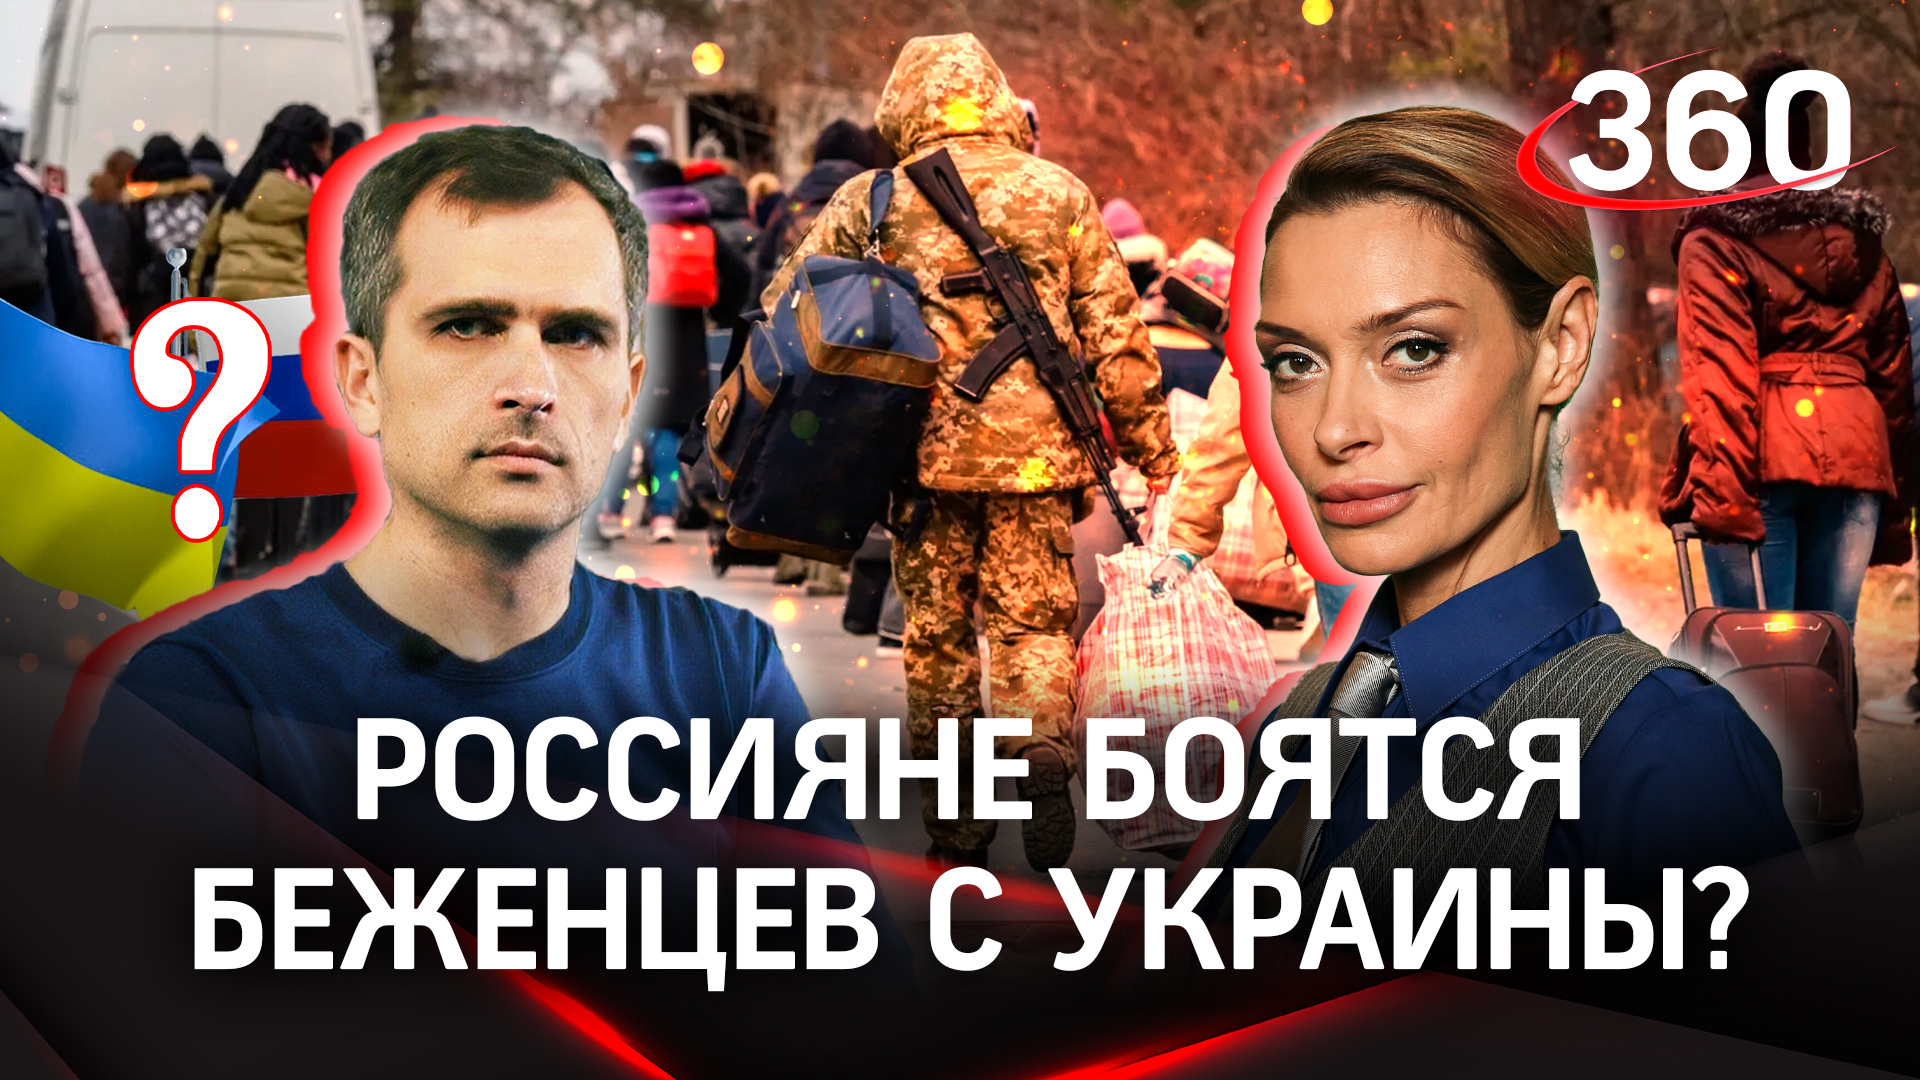 Юрий Подоляка: «Россияне боятся украинских беженцев, как огня» | Интервью Аксинье Гурьяновой